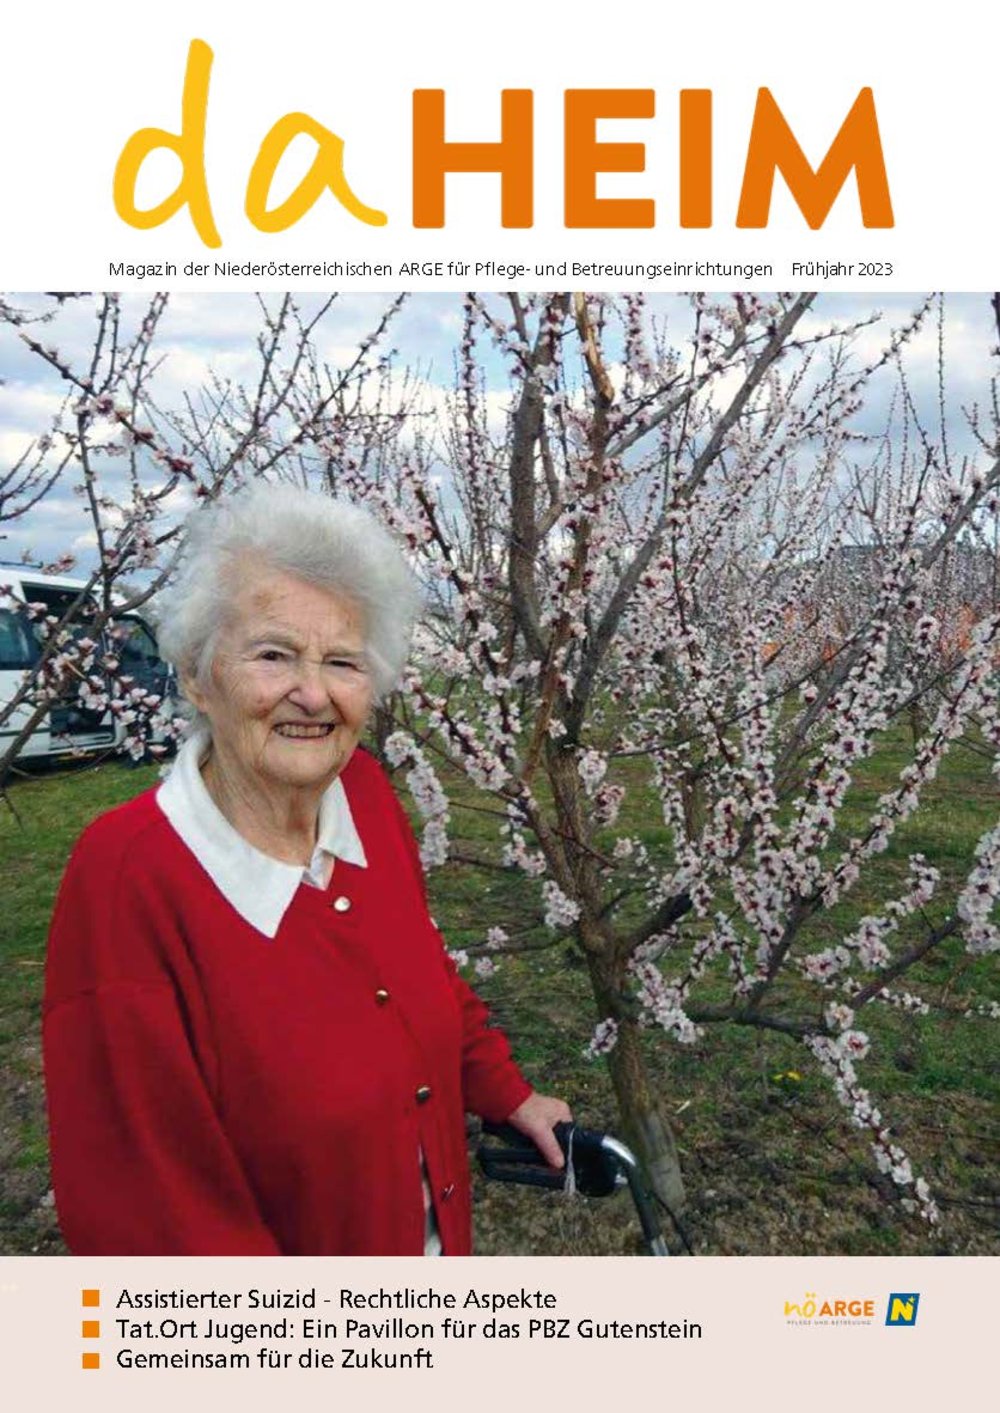 Das Cover der Frühjahrs-Ausgabe des Magazins daHEIM 20232 zeigt eine Bewohnerin vor einem blühenden Marillenbaum; 